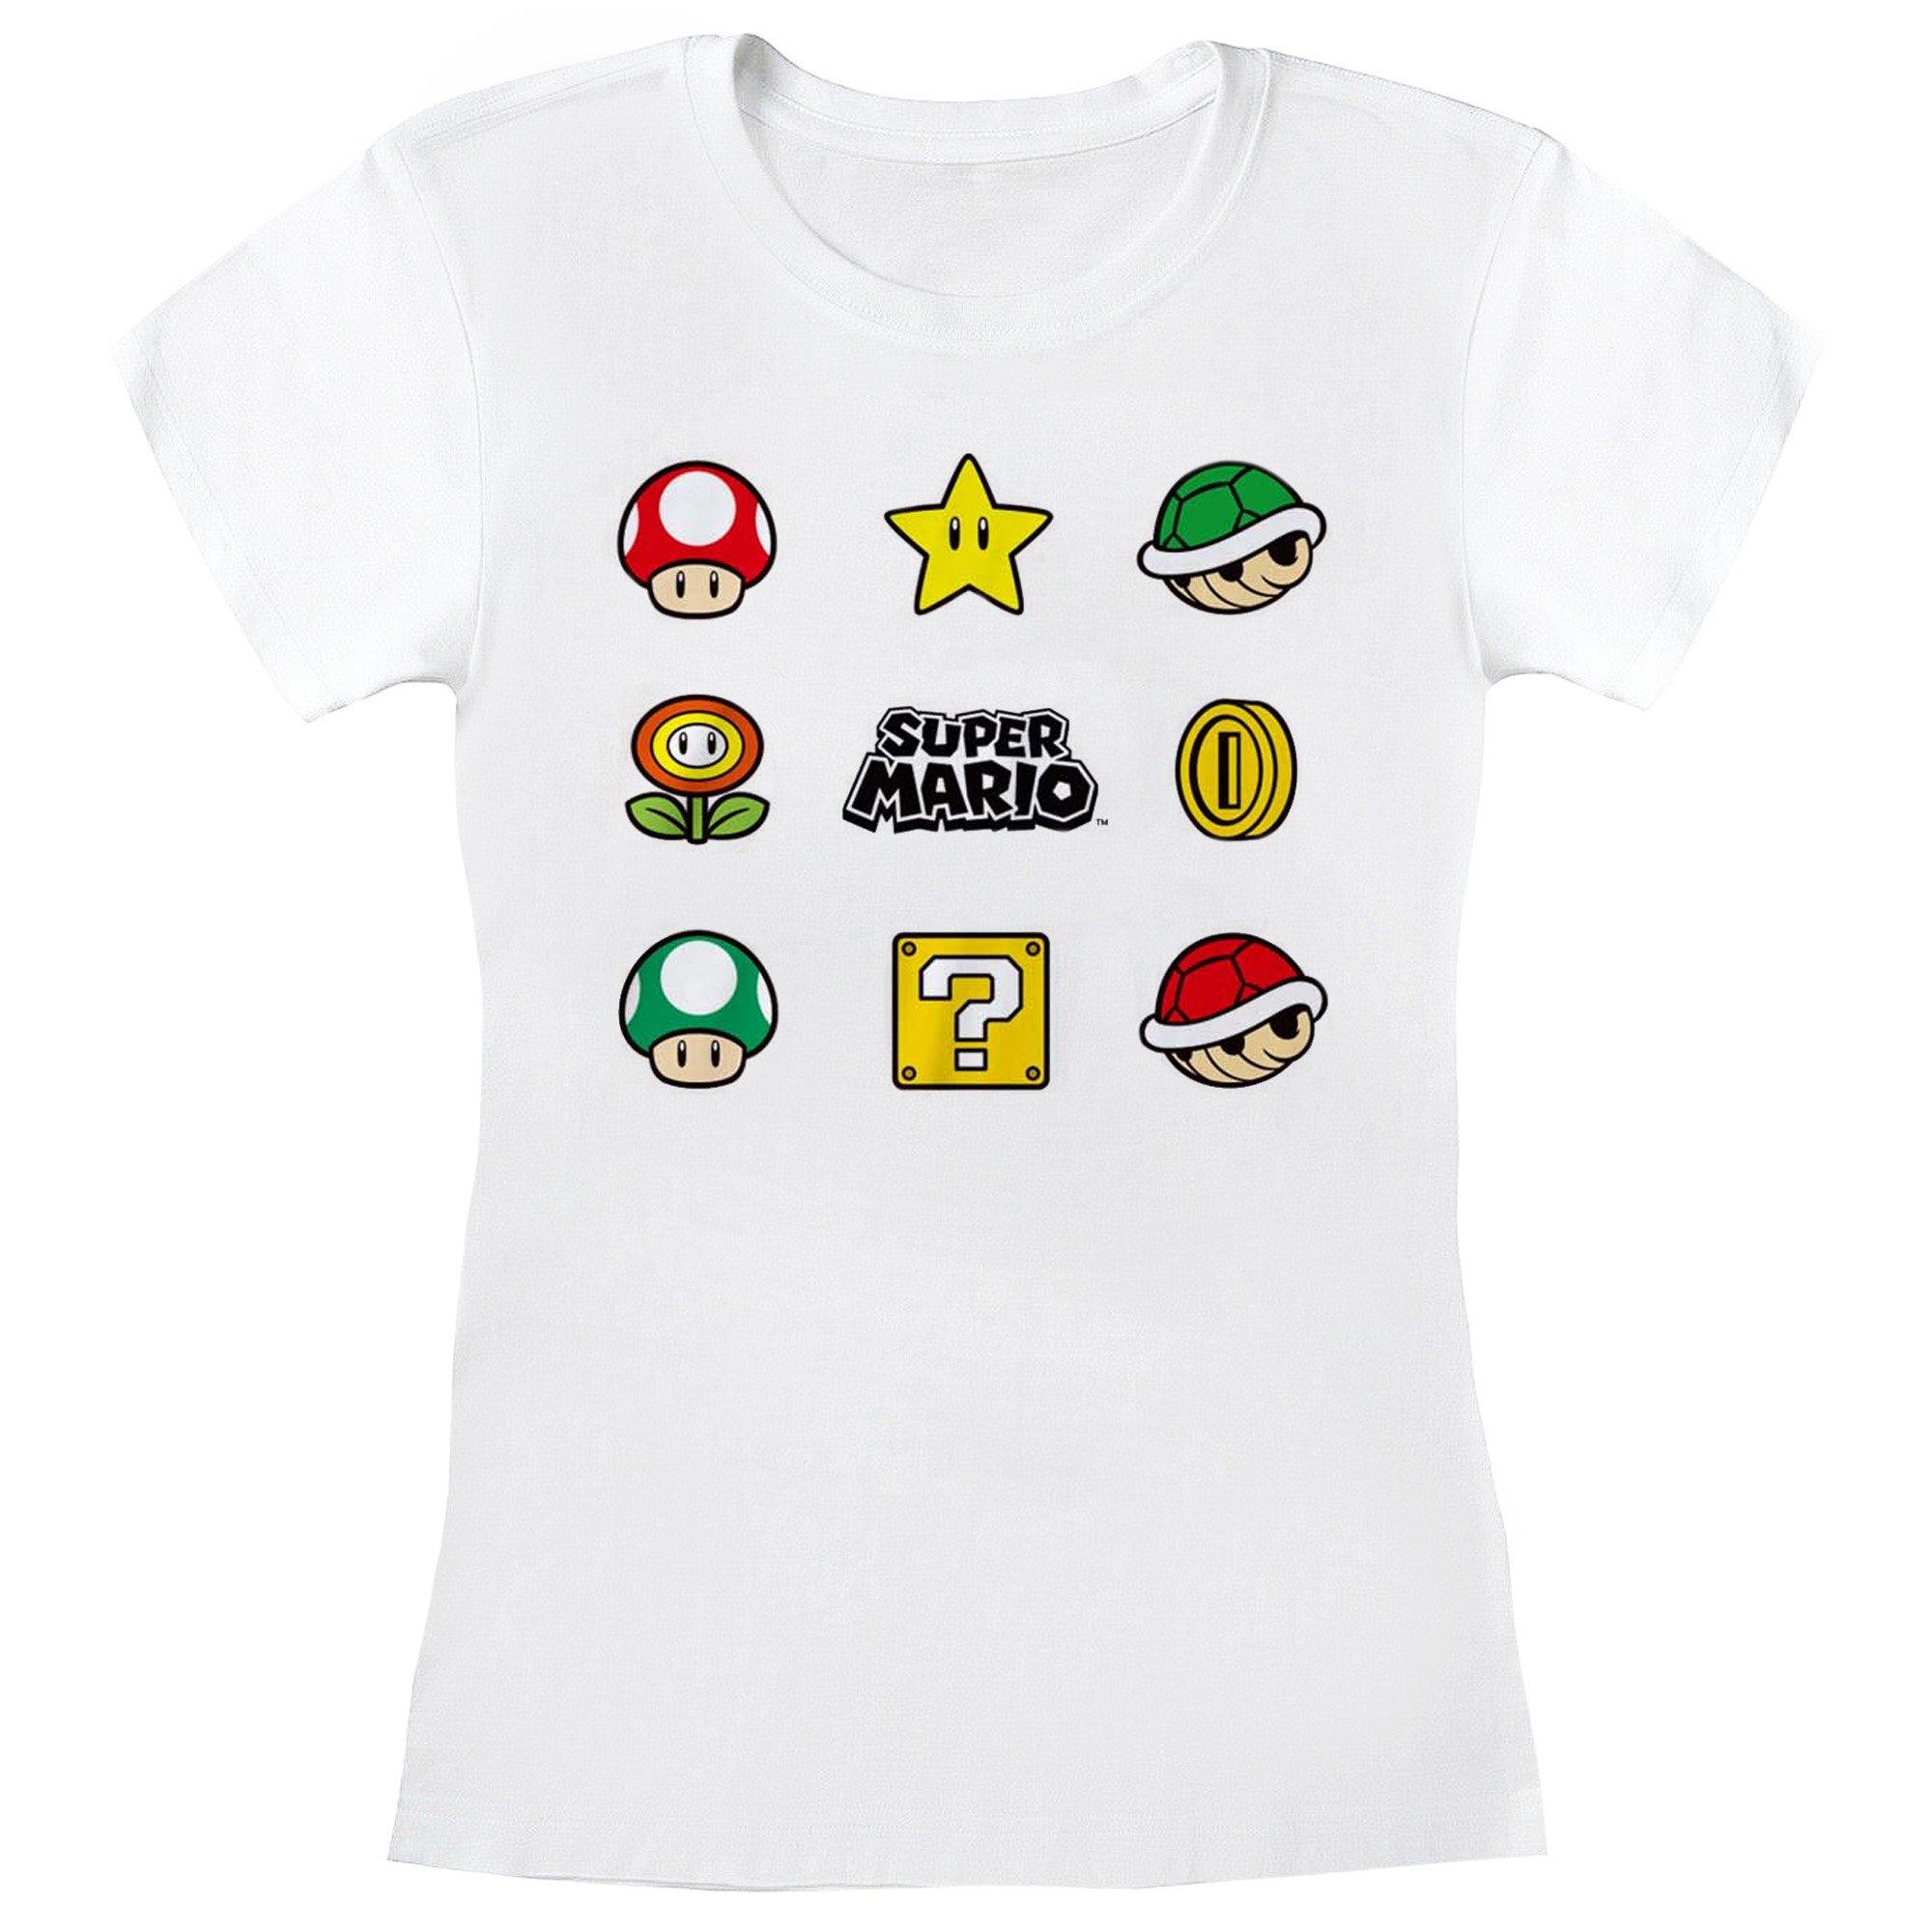 Super Mario  Tshirt ITEMS 